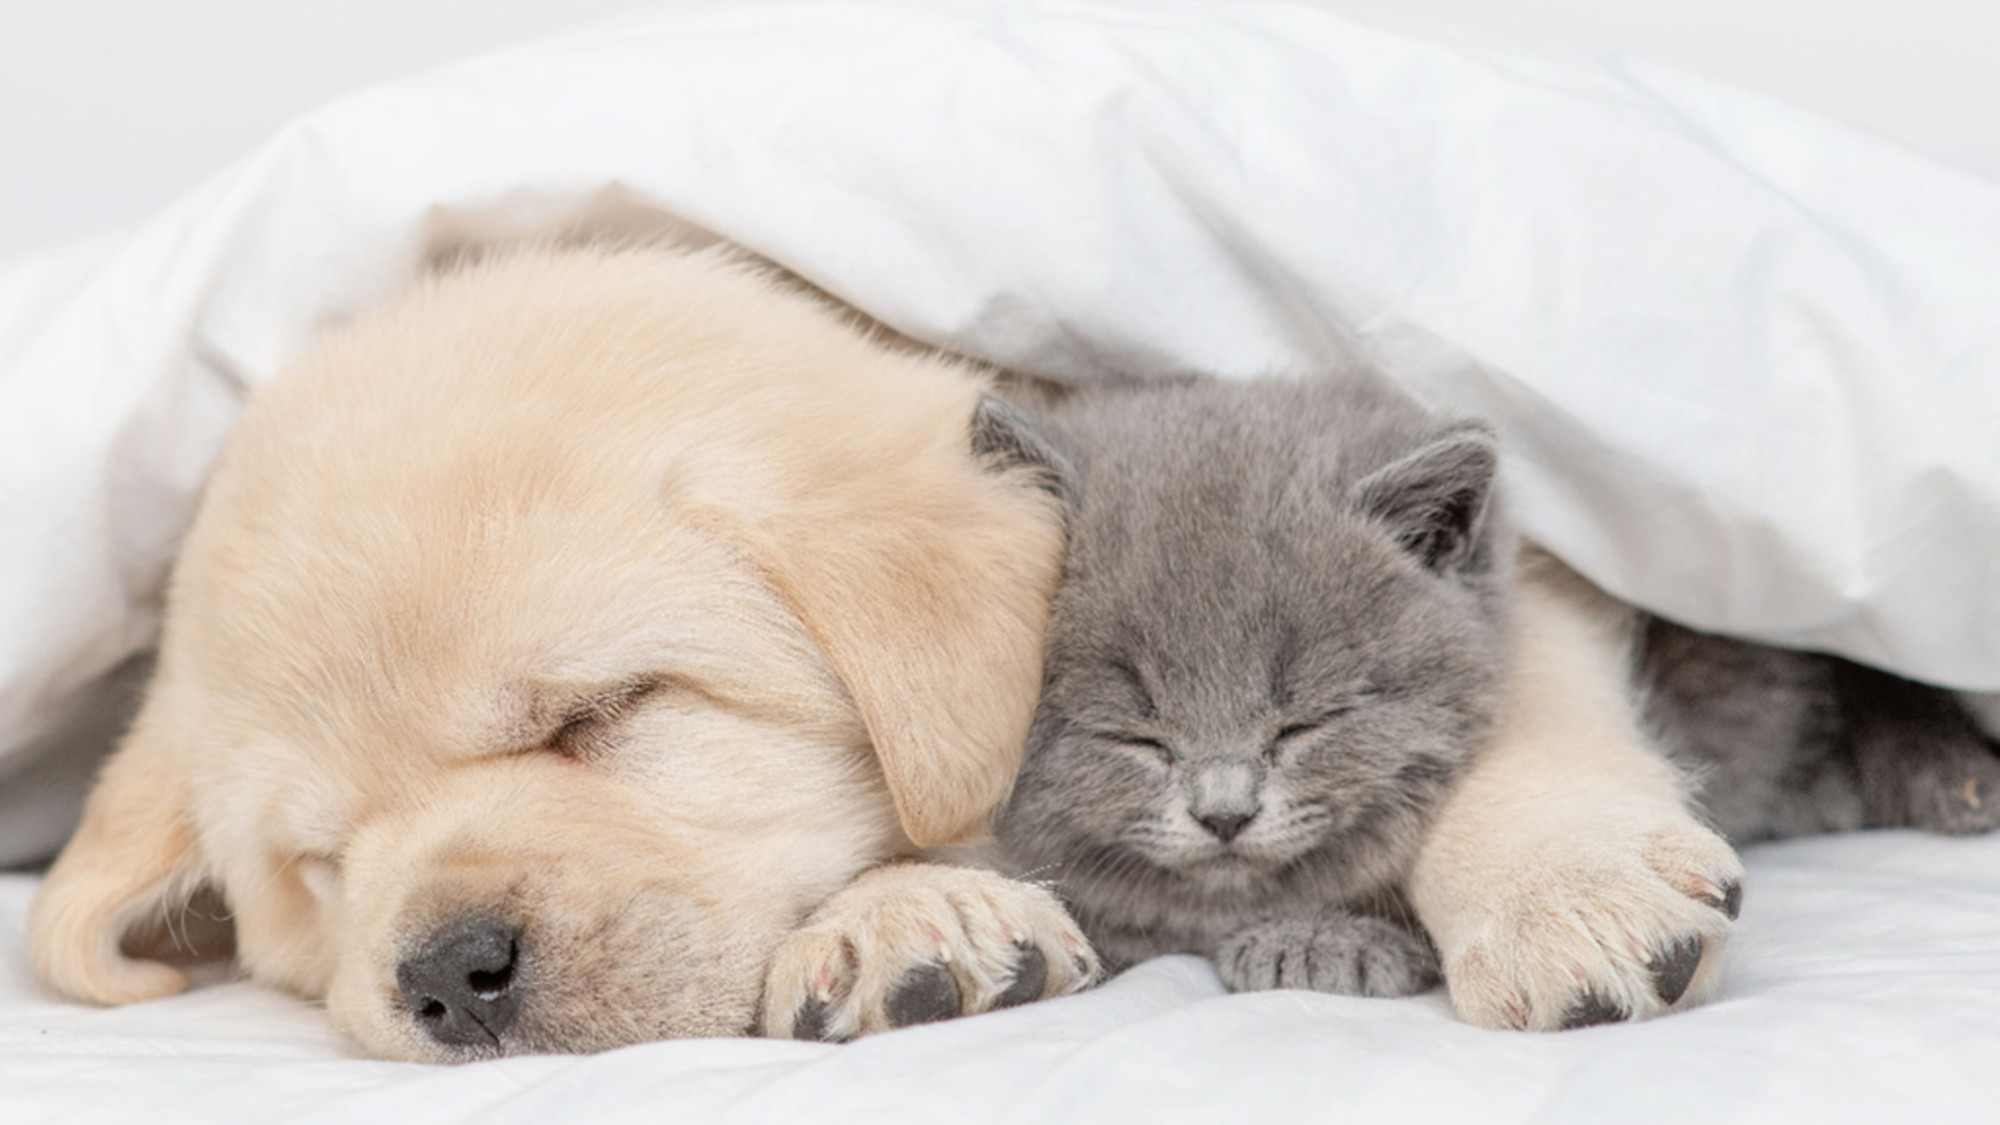 Ein Golden Retriever Welpe und eine Babykatze liegen zusammengekuschelt unter einer Decke.